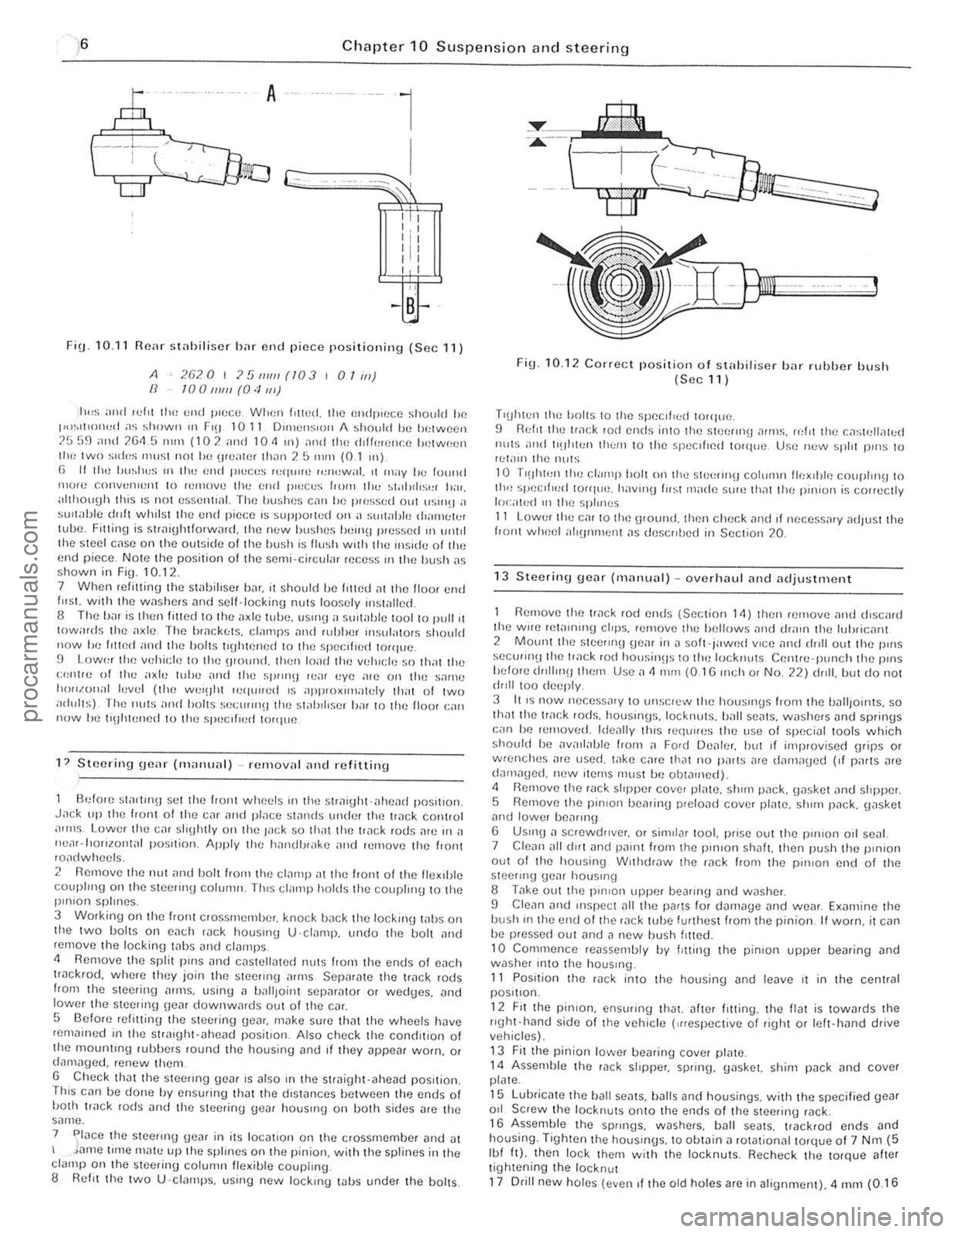 FORD CAPRI 1974  Workshop Manual ,6 Chapter 10 Suspension and steering 
A 
l 
I Lr;=::;;r""~Jj'Q l
G-cc;;;;-~---~~~~~ 
, " I : I II 
I , , 
,  , 
FiU · 10.11 Fl(Wr stniJiliscr b;H flnd piece positioning (Sec 11) 
A IJ